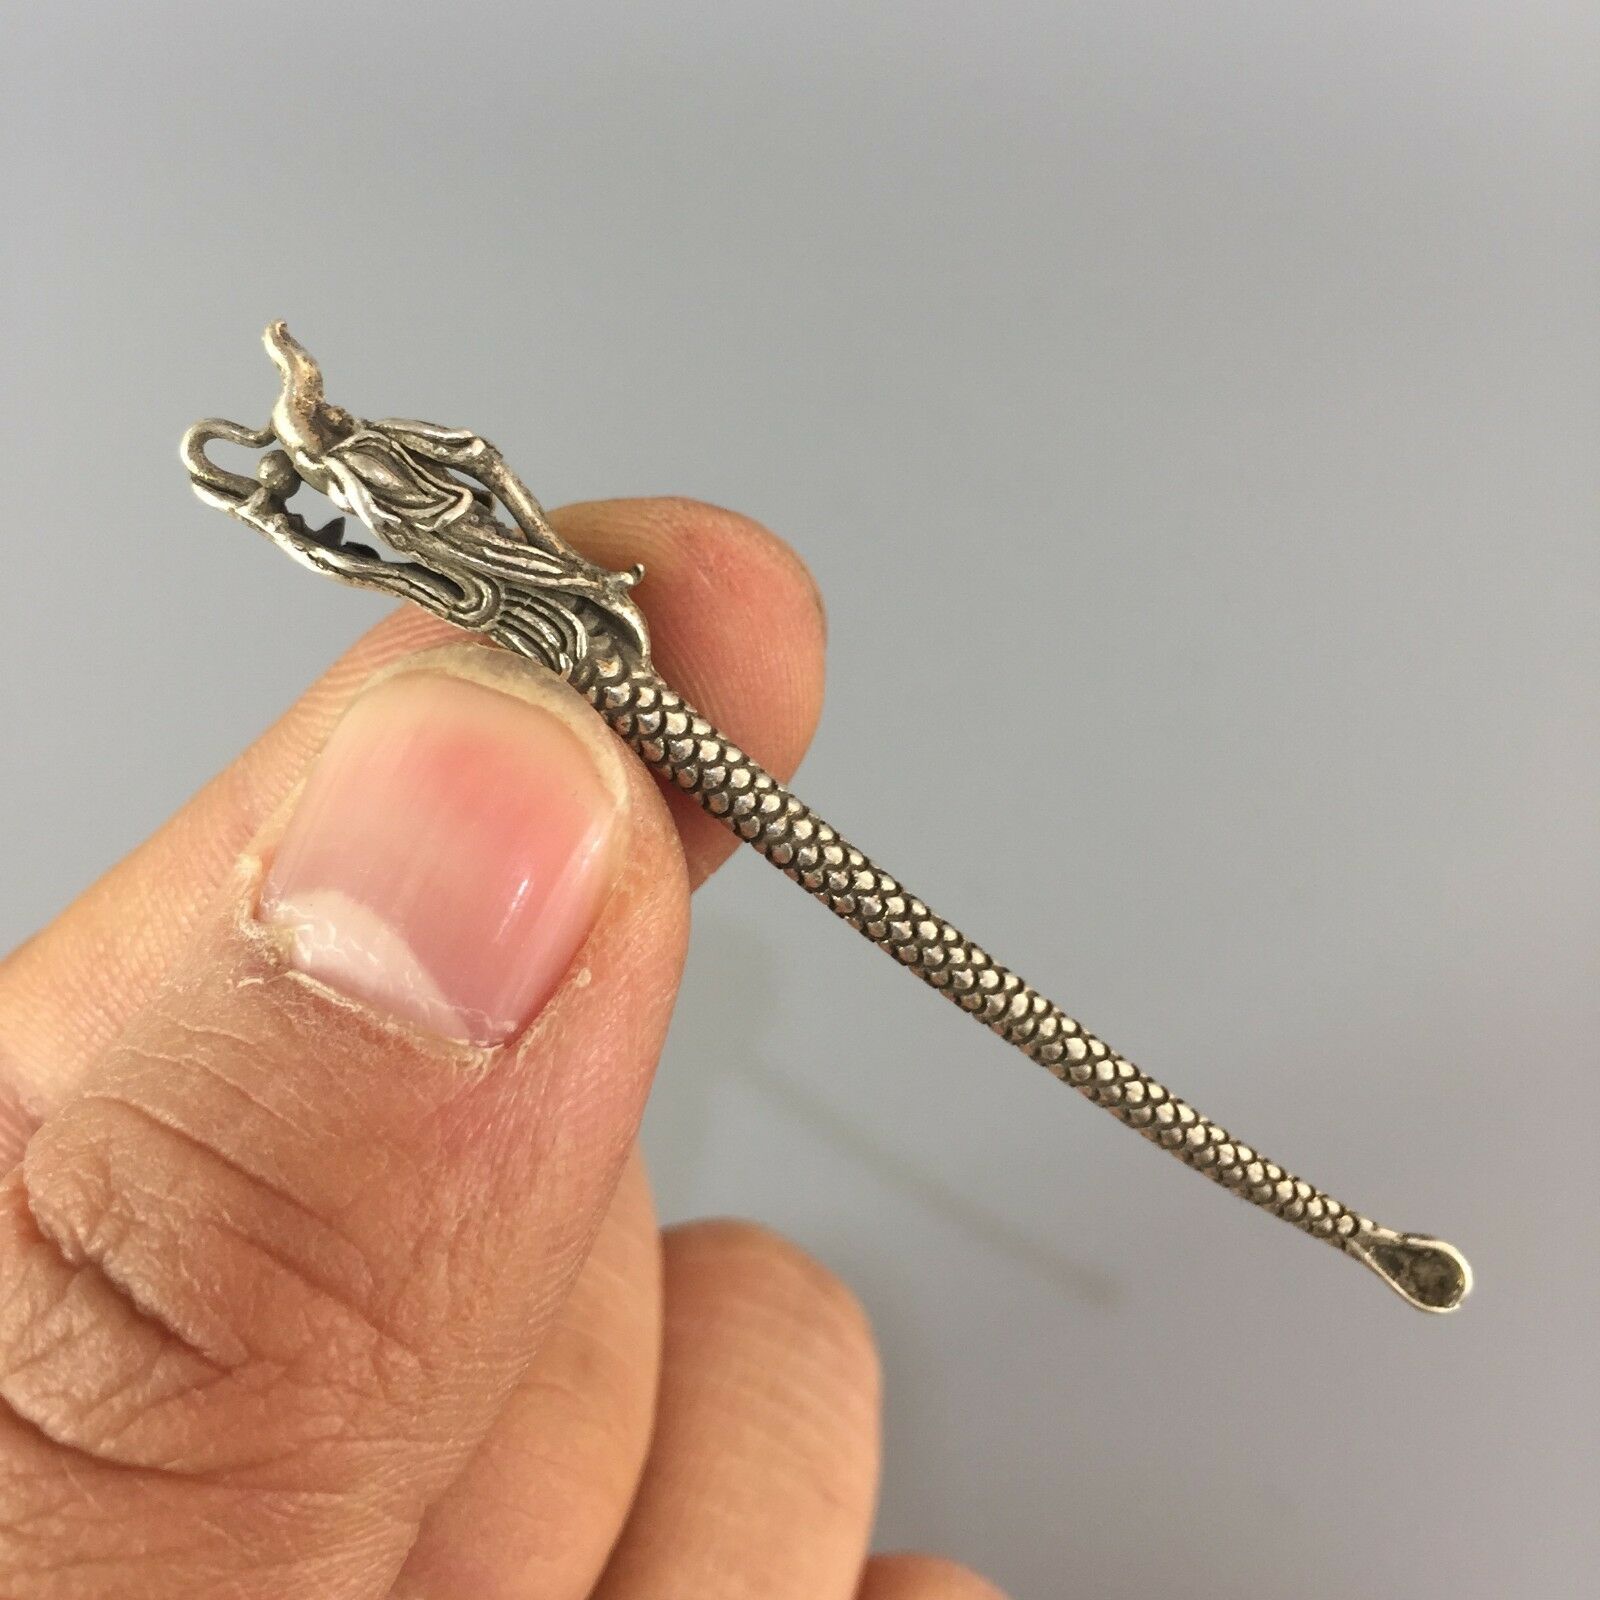 Collectible Tibet-silver Copper Handwork Dragon Antique Ear Spoon Pendant Gift